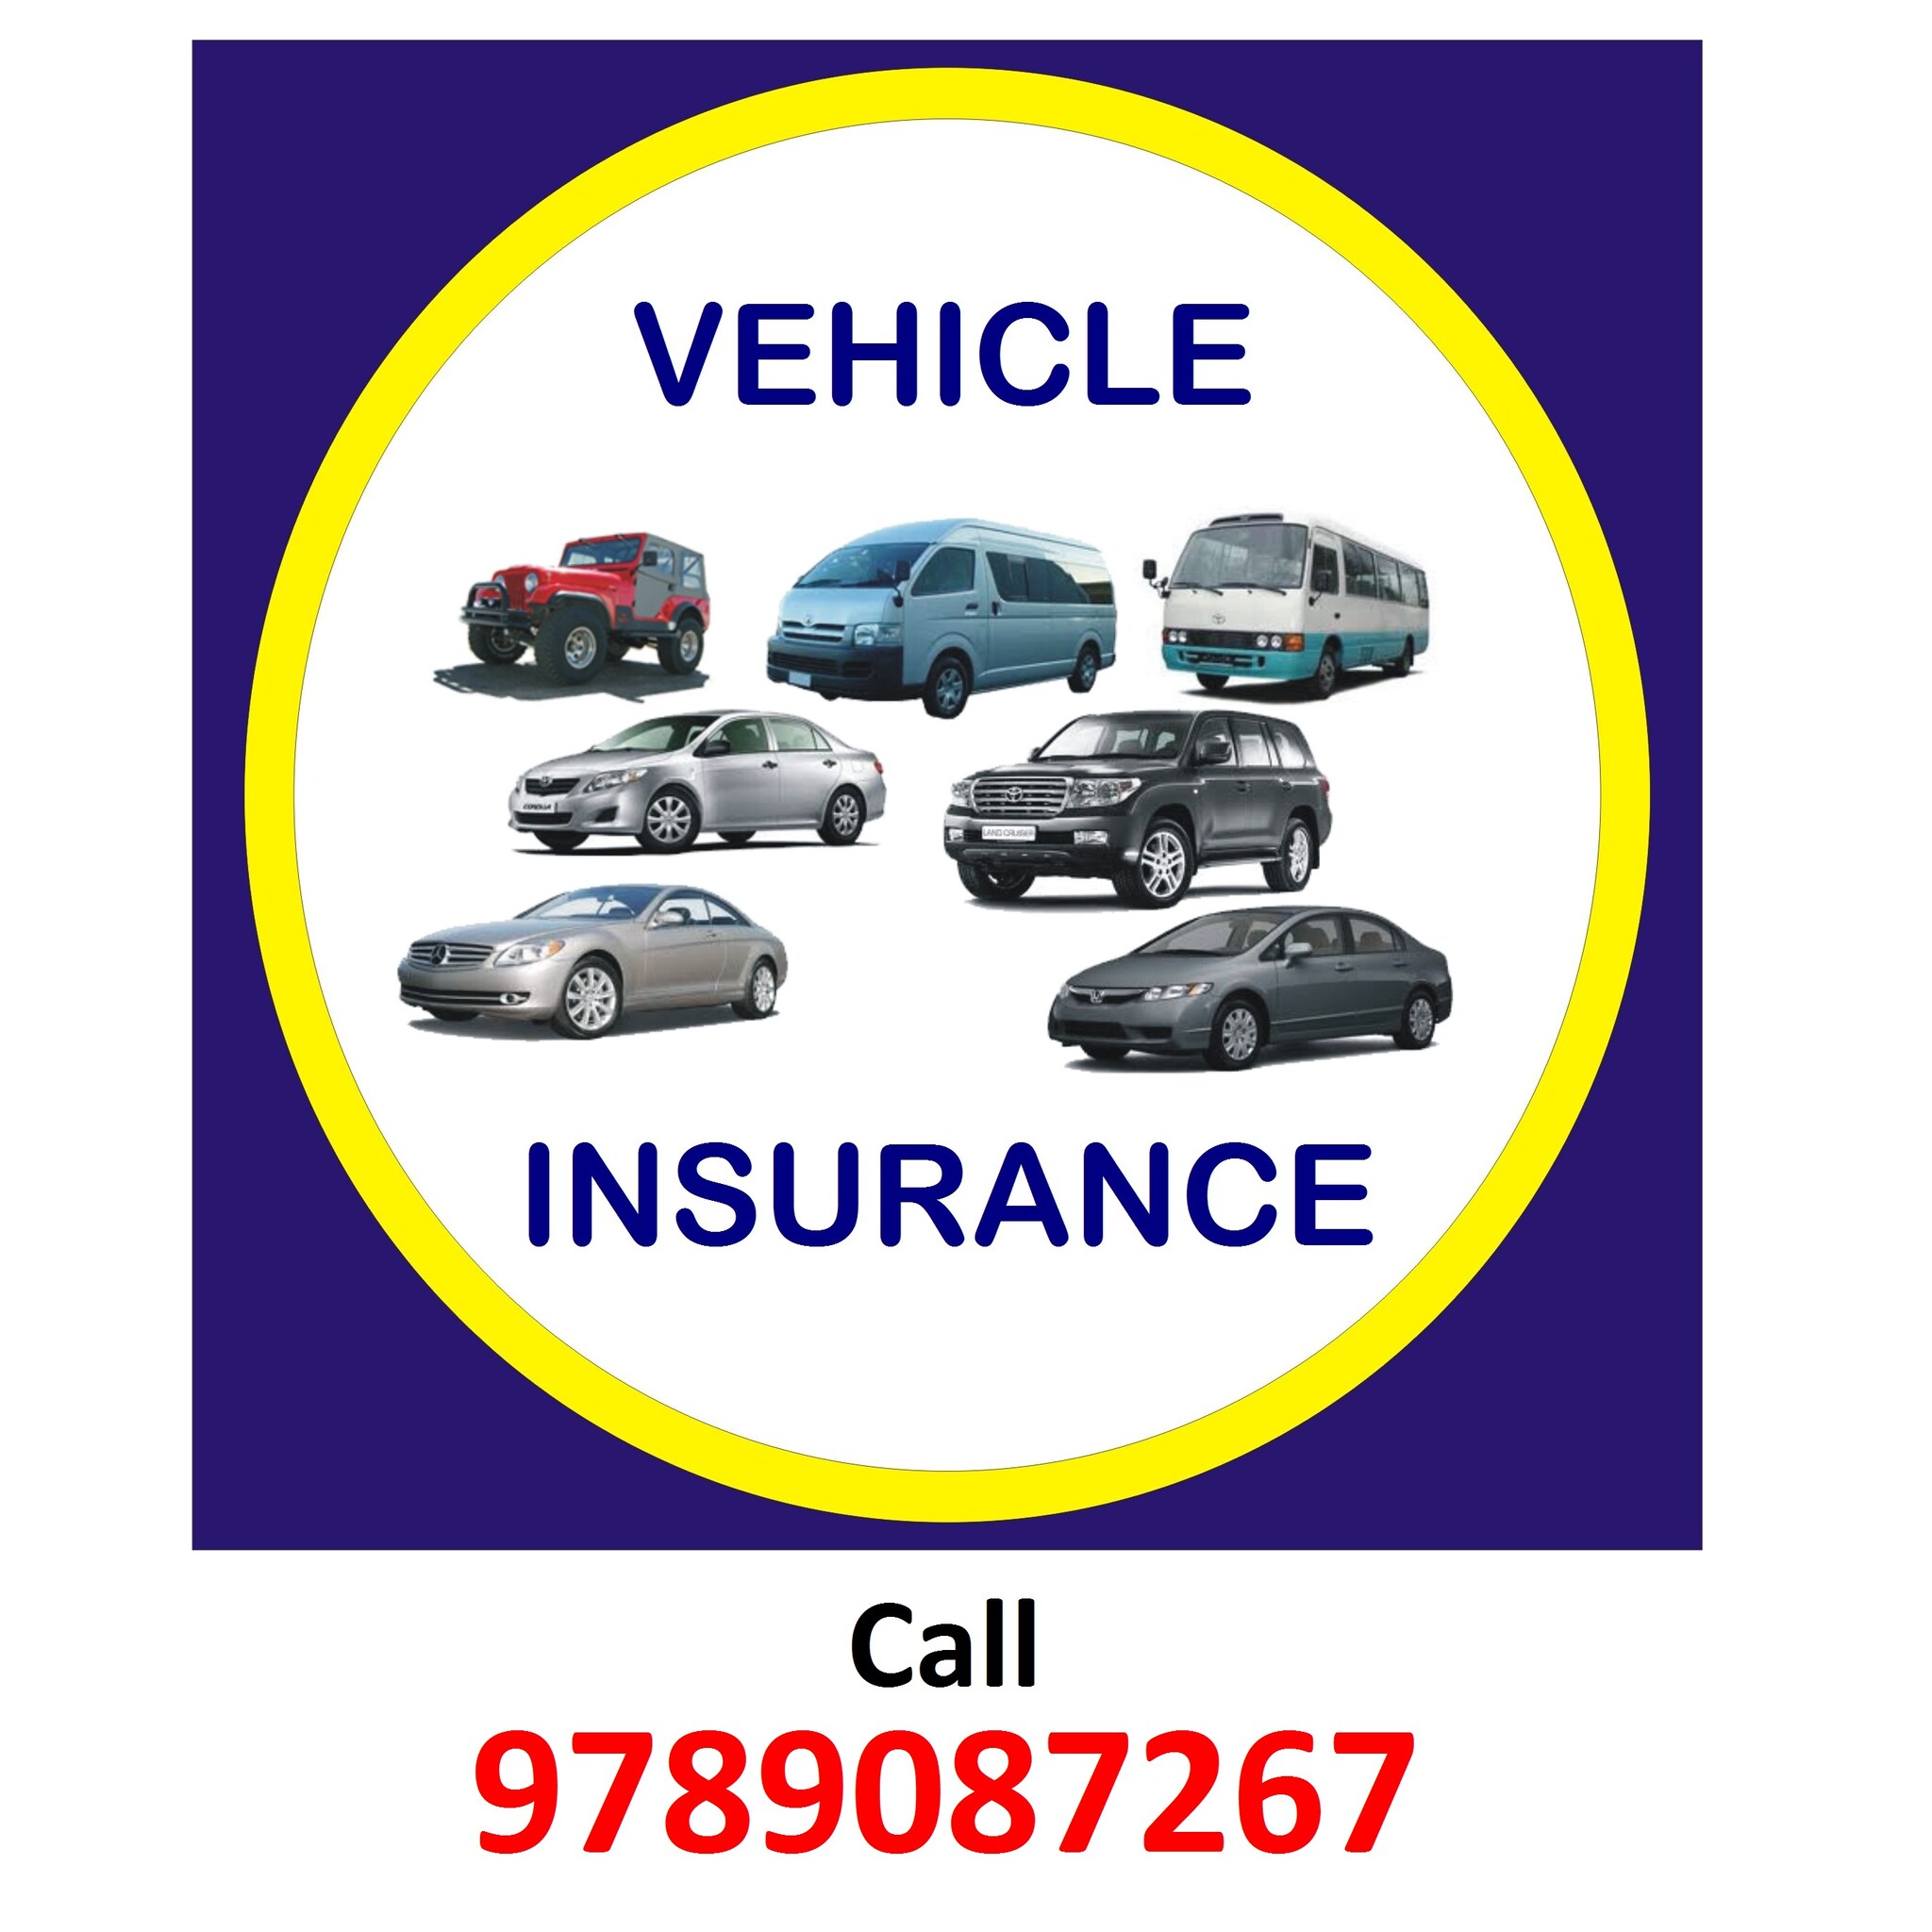 Car Insurance Agent in Chennai - Call 9789087267